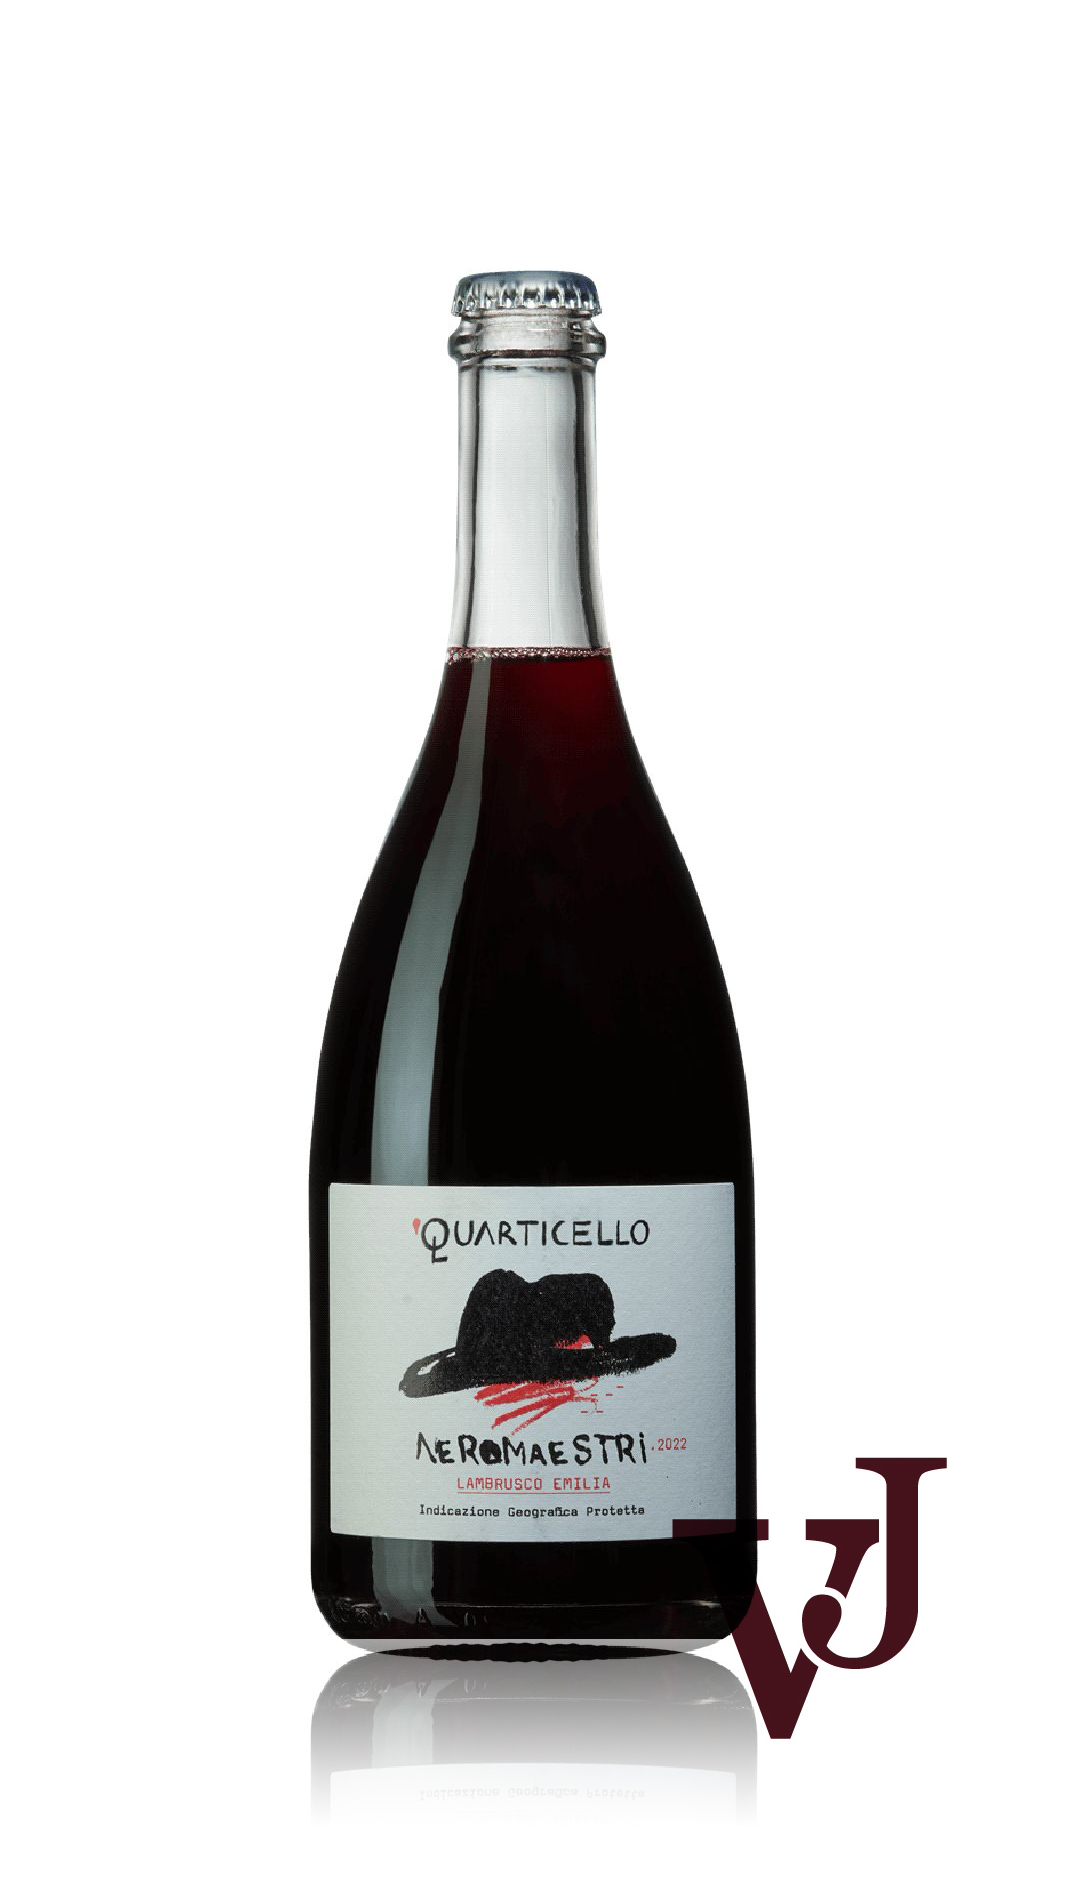 Rött Vin - Neromaestri Lambrusco 2022 artikel nummer 9364901 från producenten Quarticello från Italien